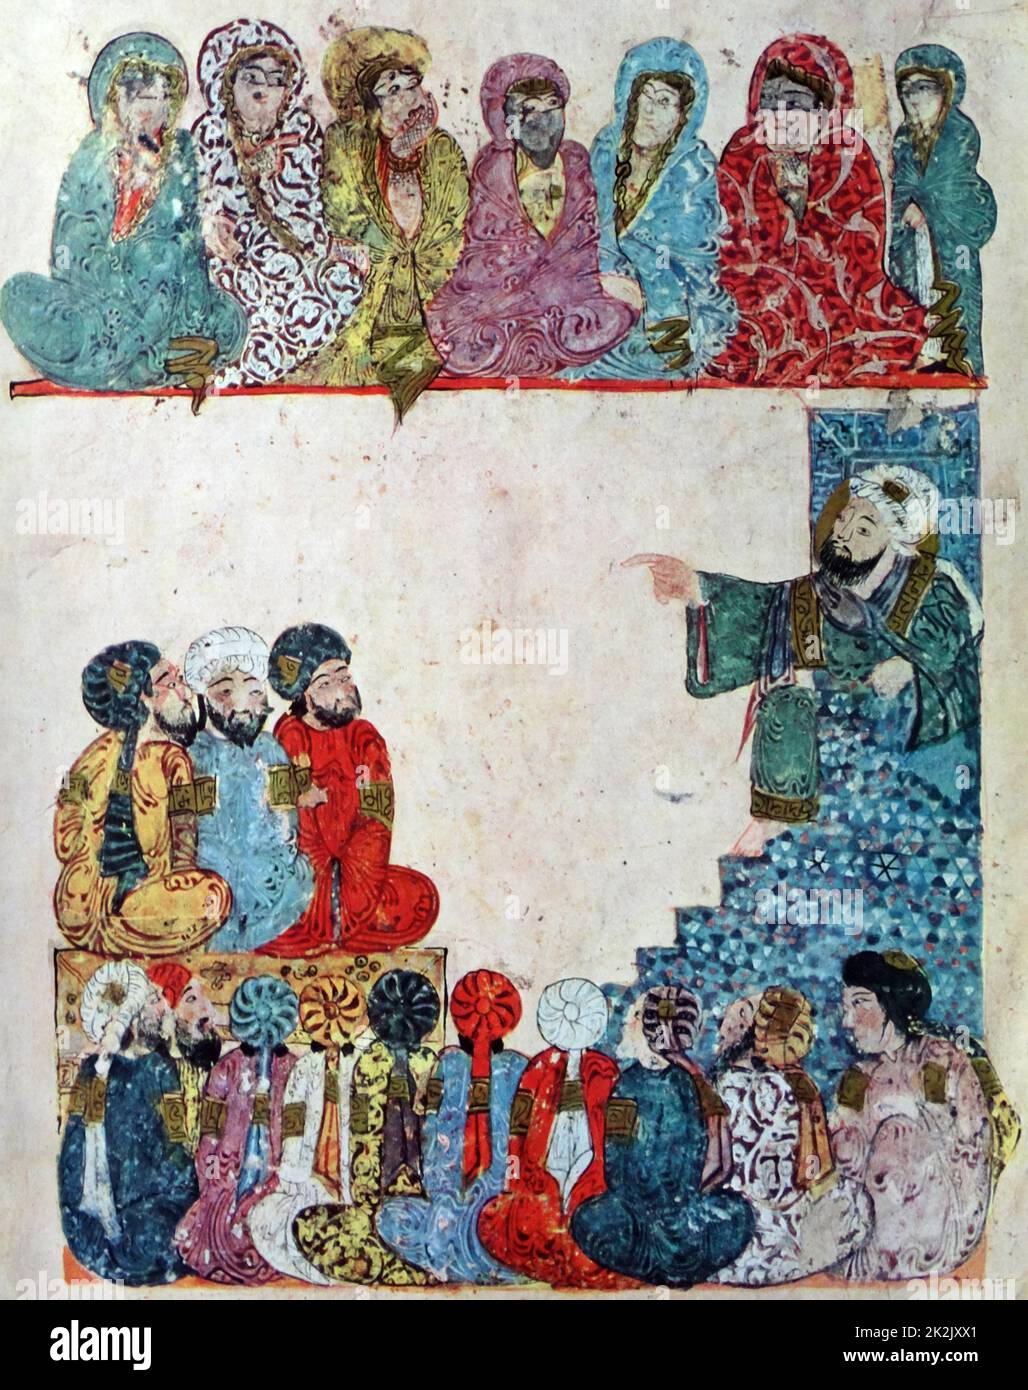 Abu Zayd prédication ; Illustration de Maqamat de al-Hariri, Bibliothèque nationale de France, manuscrit arabe 5847, 1237AD. Folio 58 Verso : maqama 21. Banque D'Images